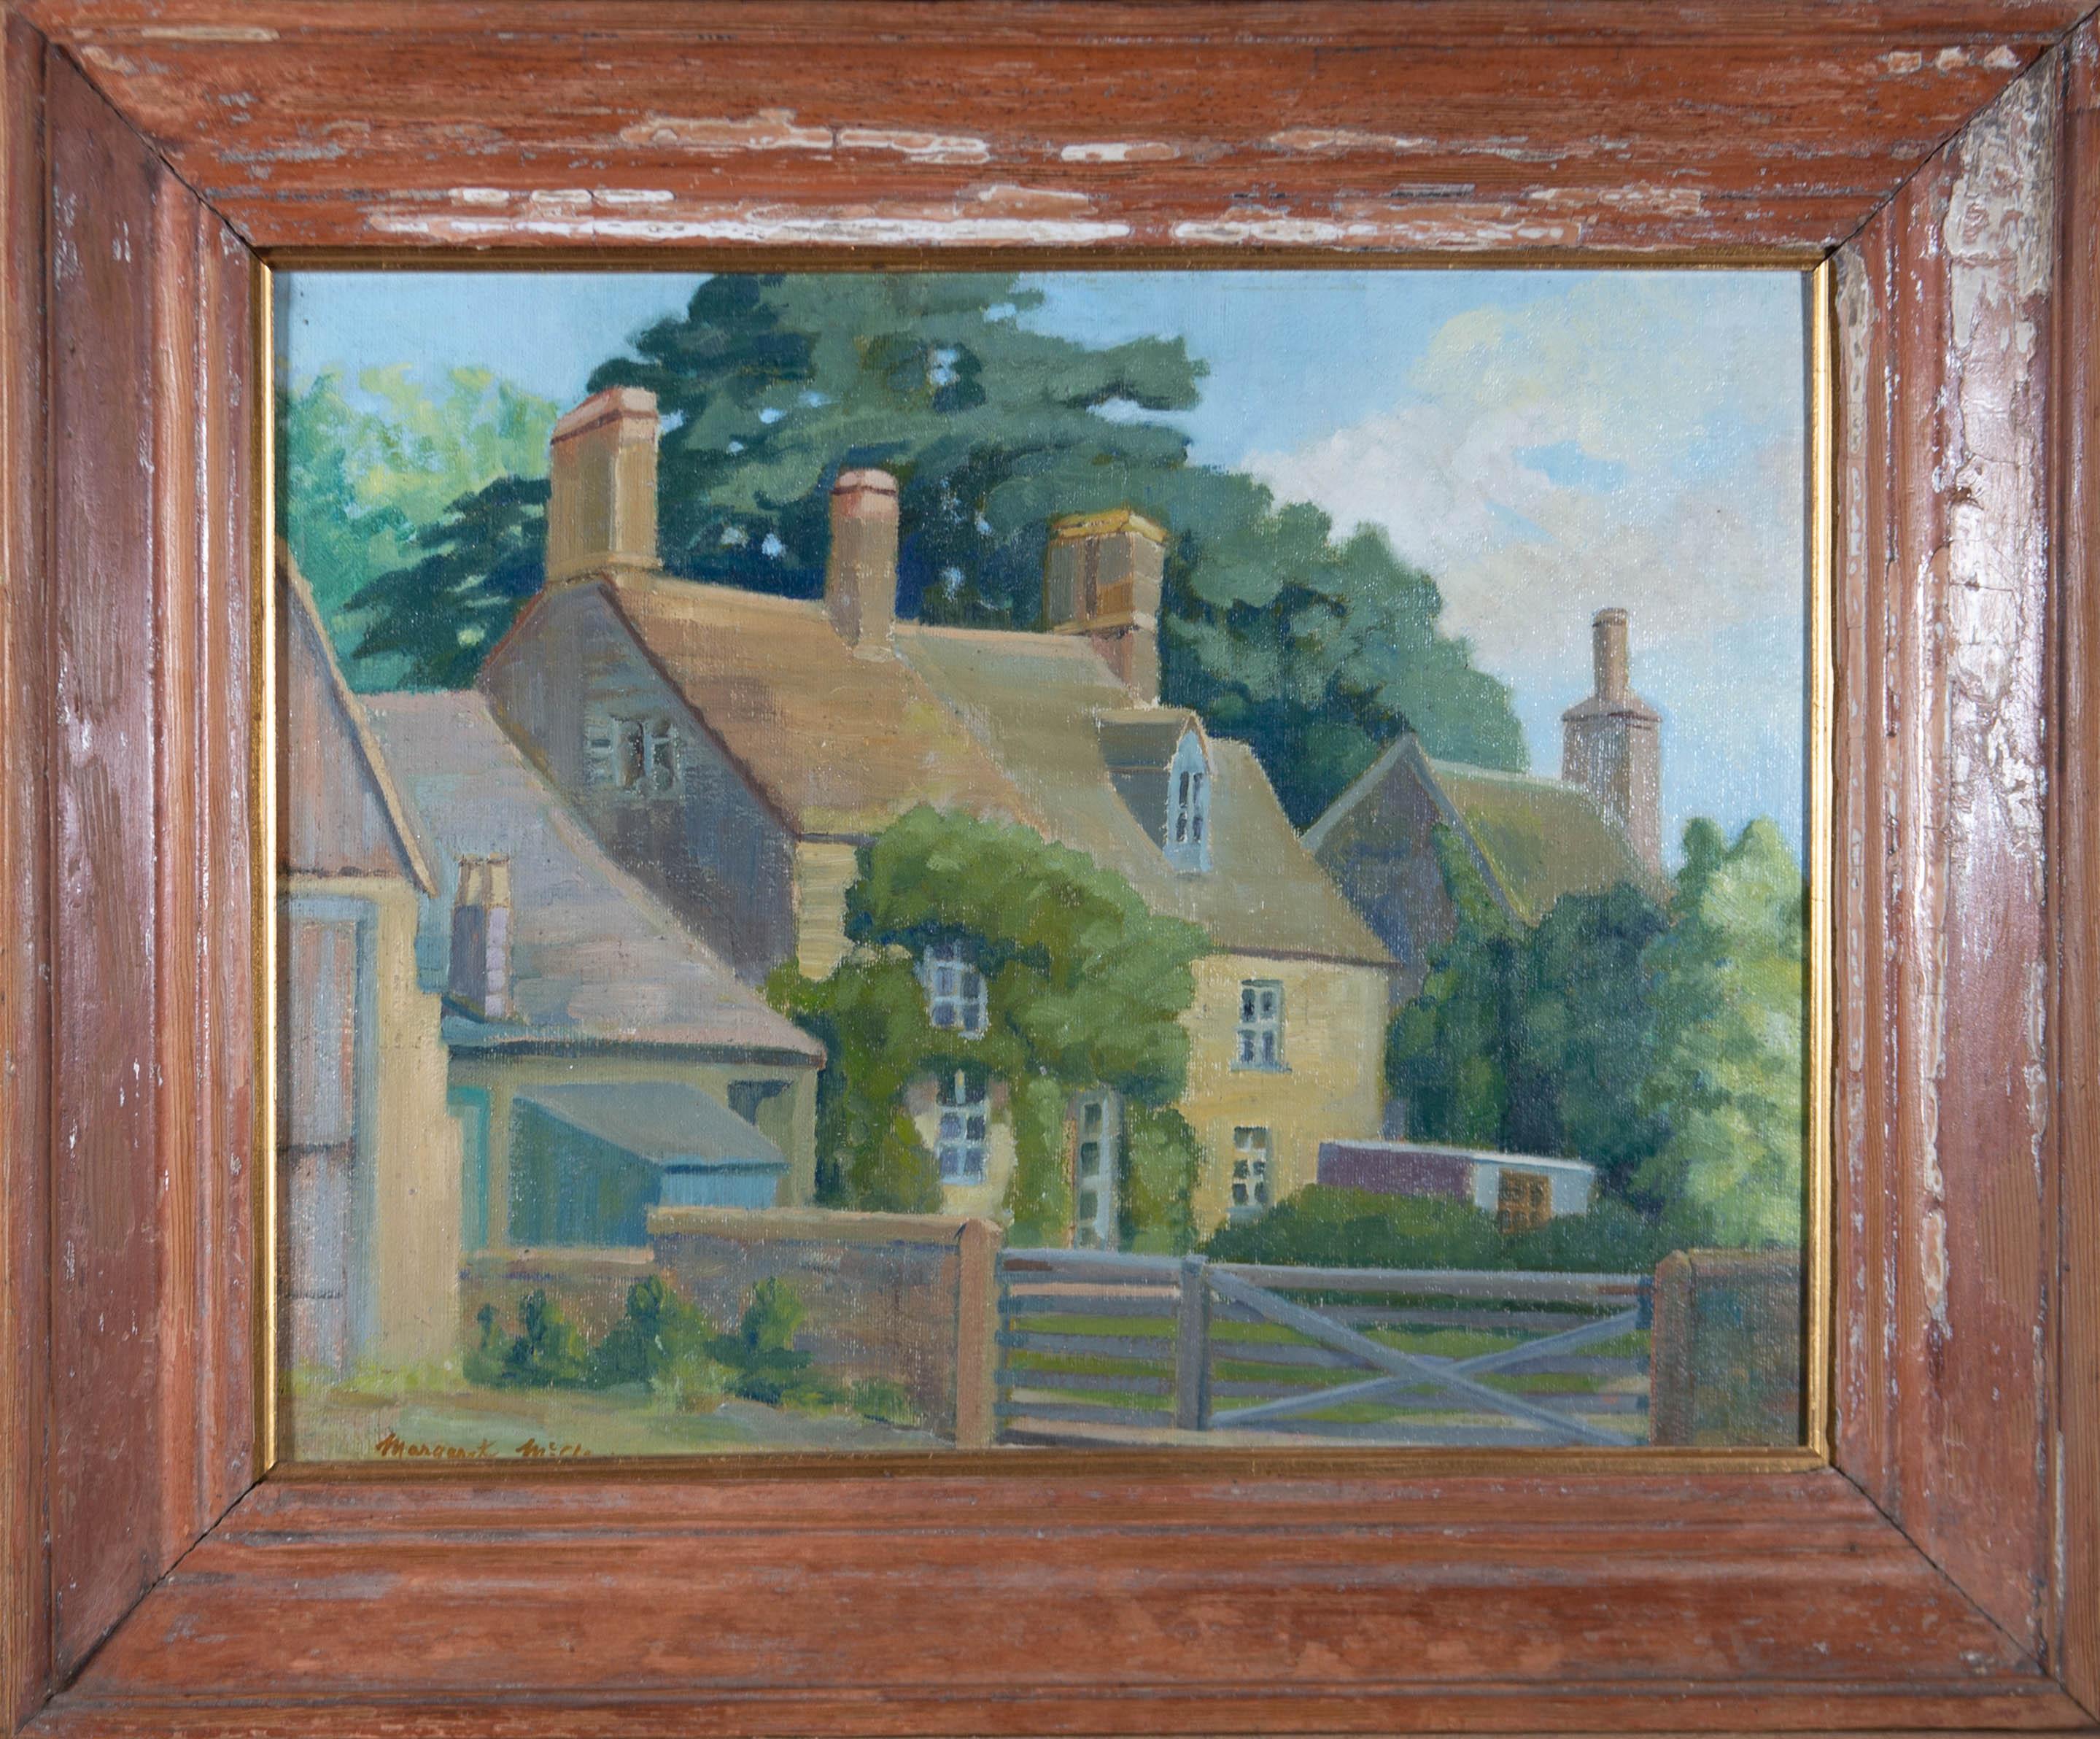 Une magnifique étude de Margaret McClean représentant un petit cottage anglais avec un jardin de devant et une façade recouverte de lierre. Présenté dans un cadre en bois vieilli. Signé sur le bord inférieur. Sur panneau de toile.
